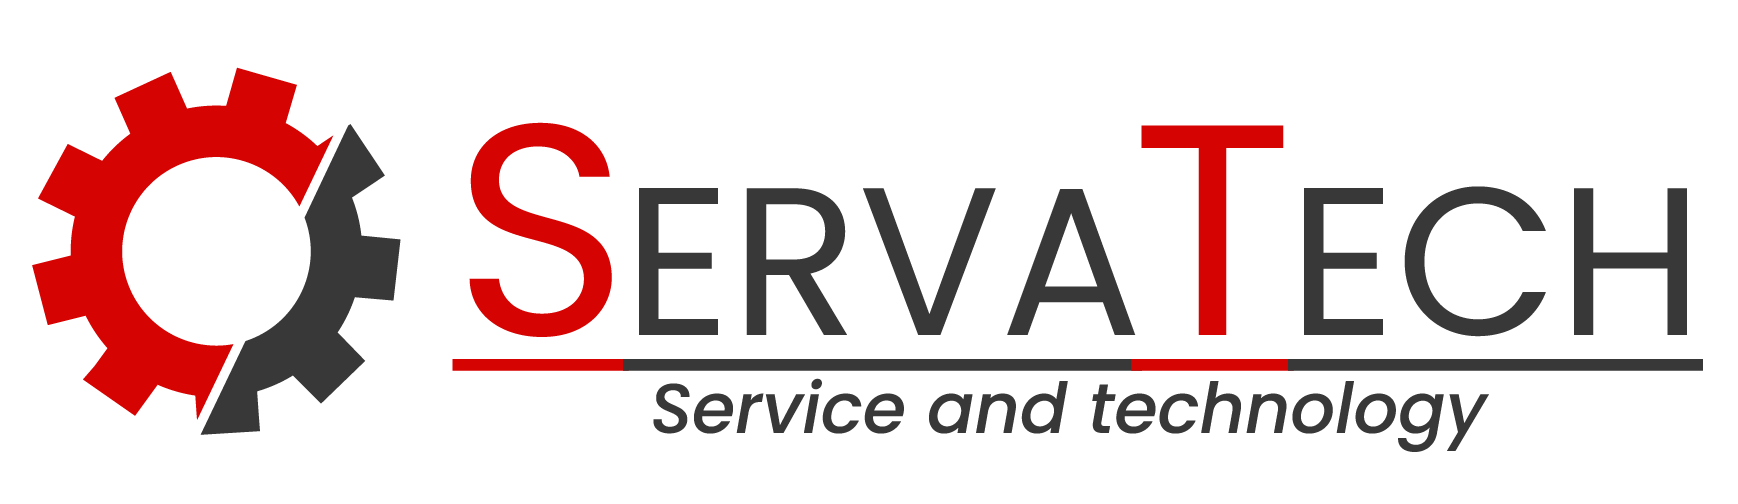 Servatech logo v1-01.png